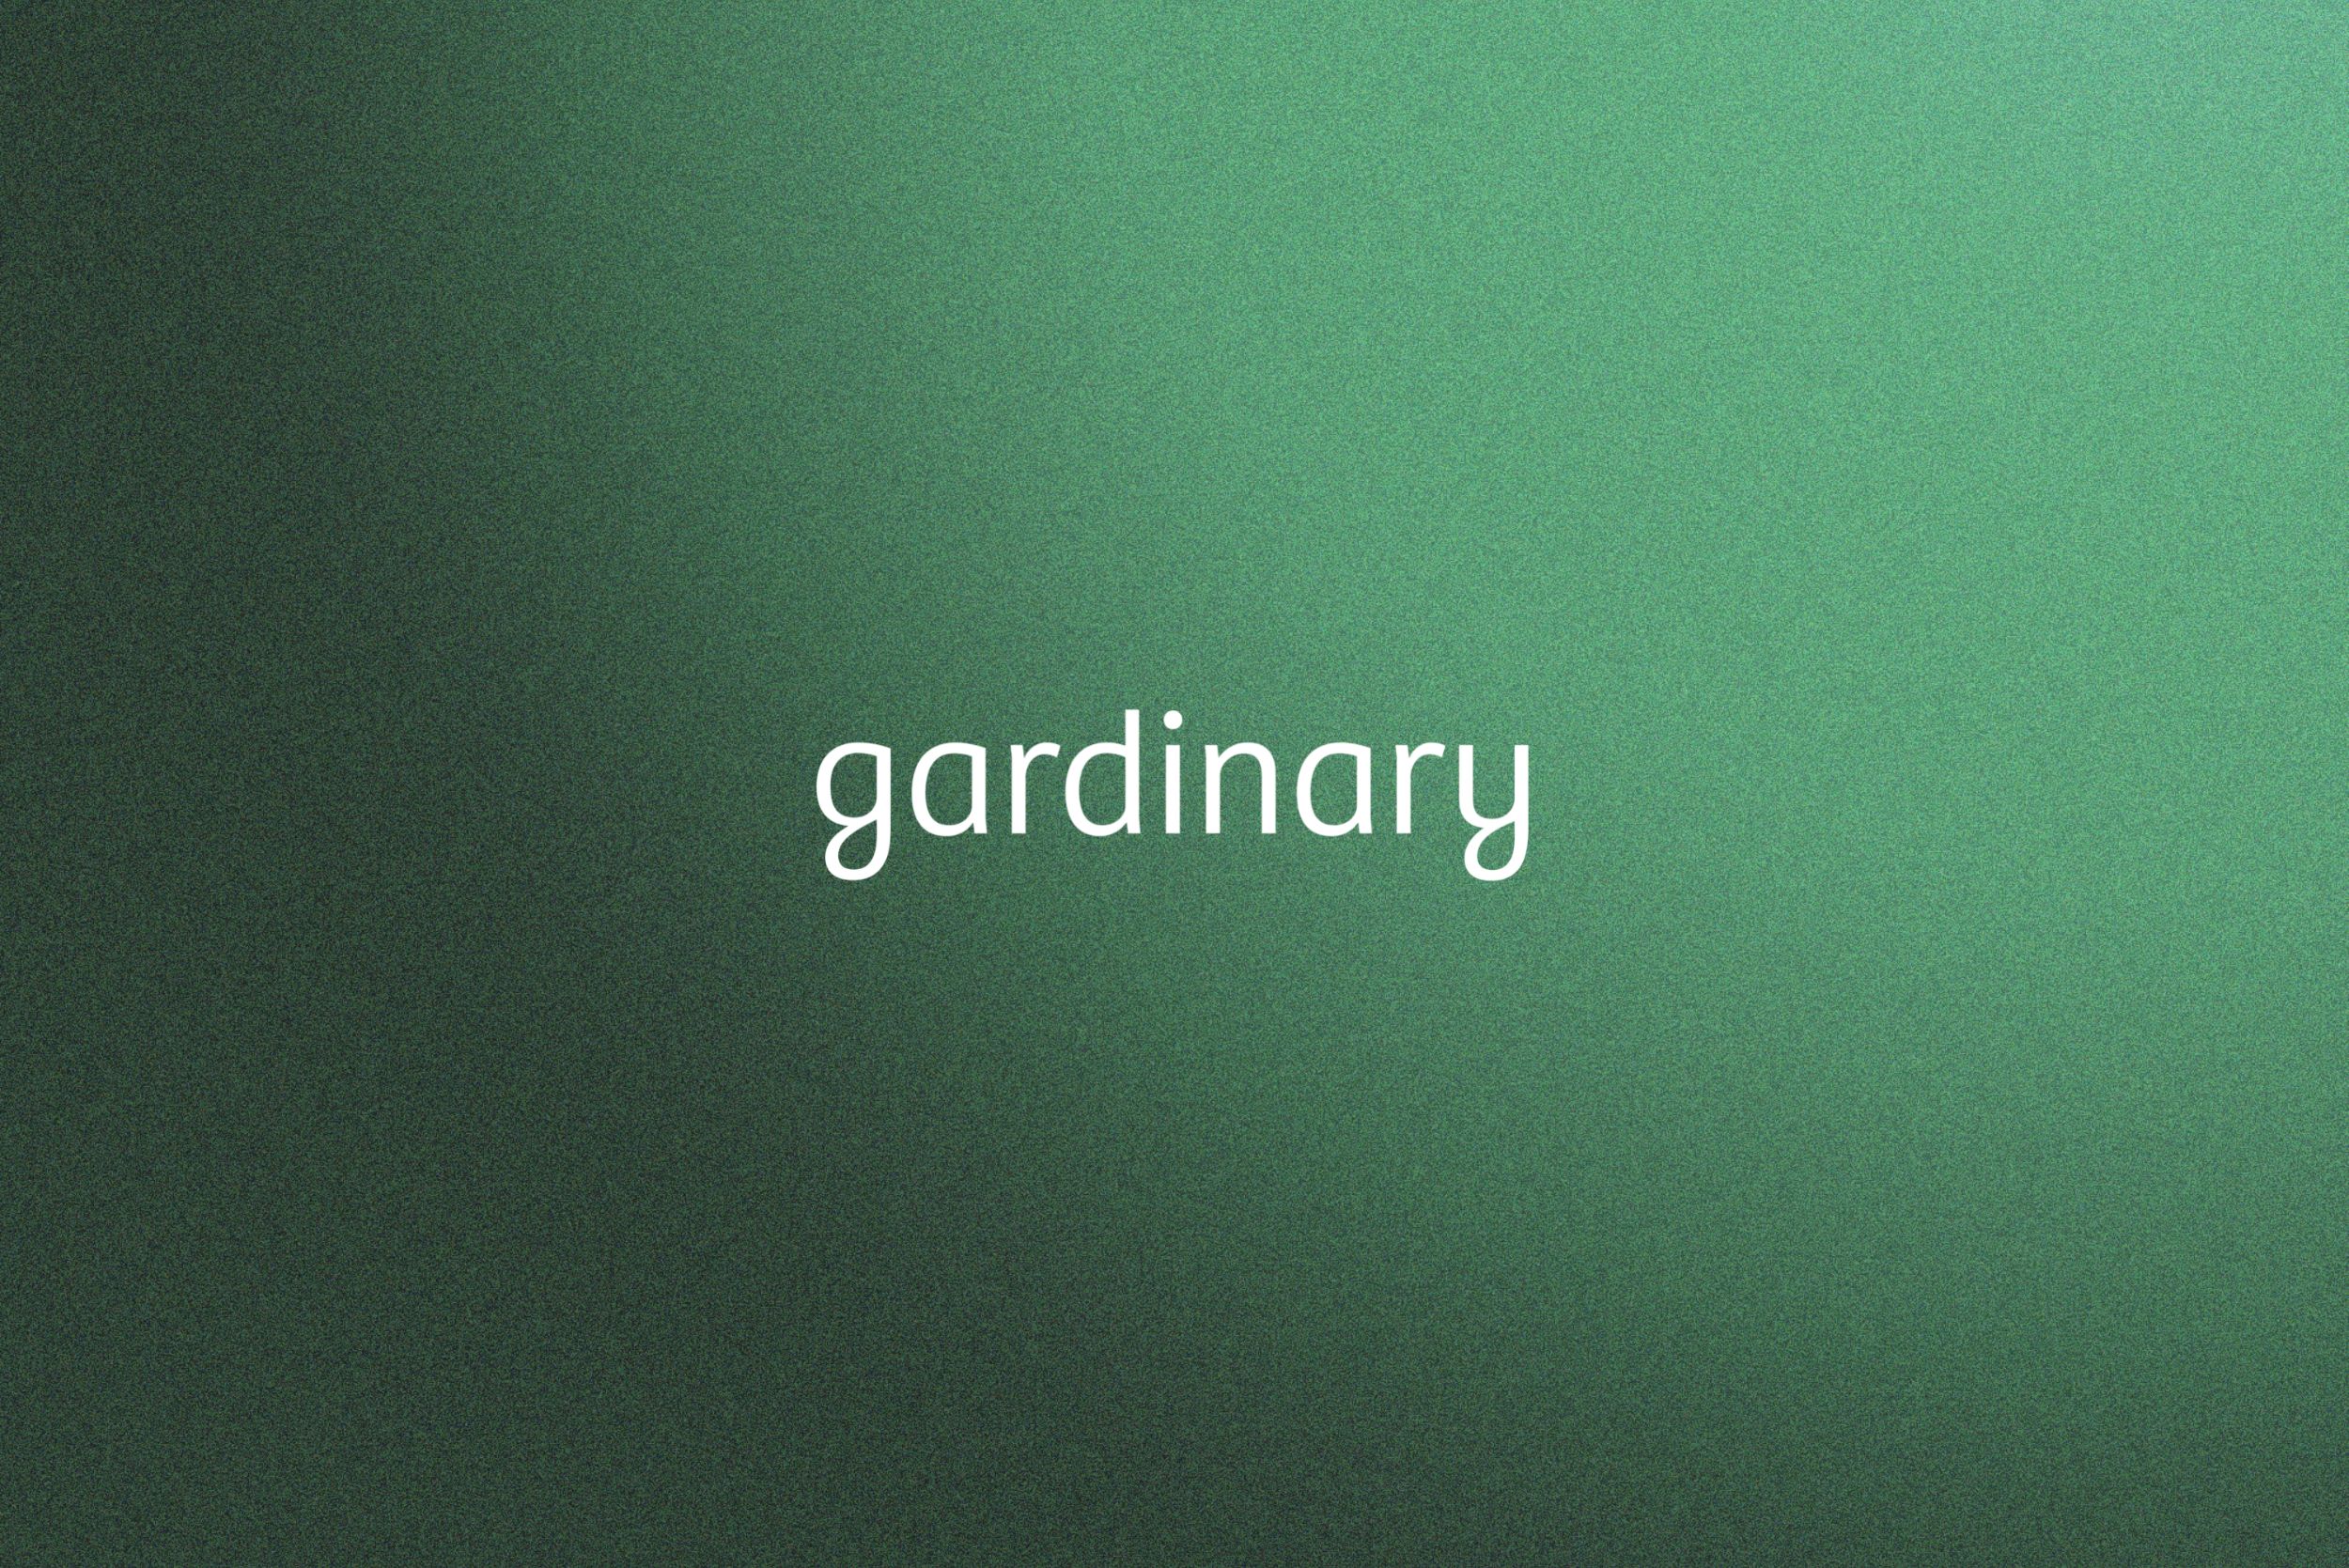 Gardinary